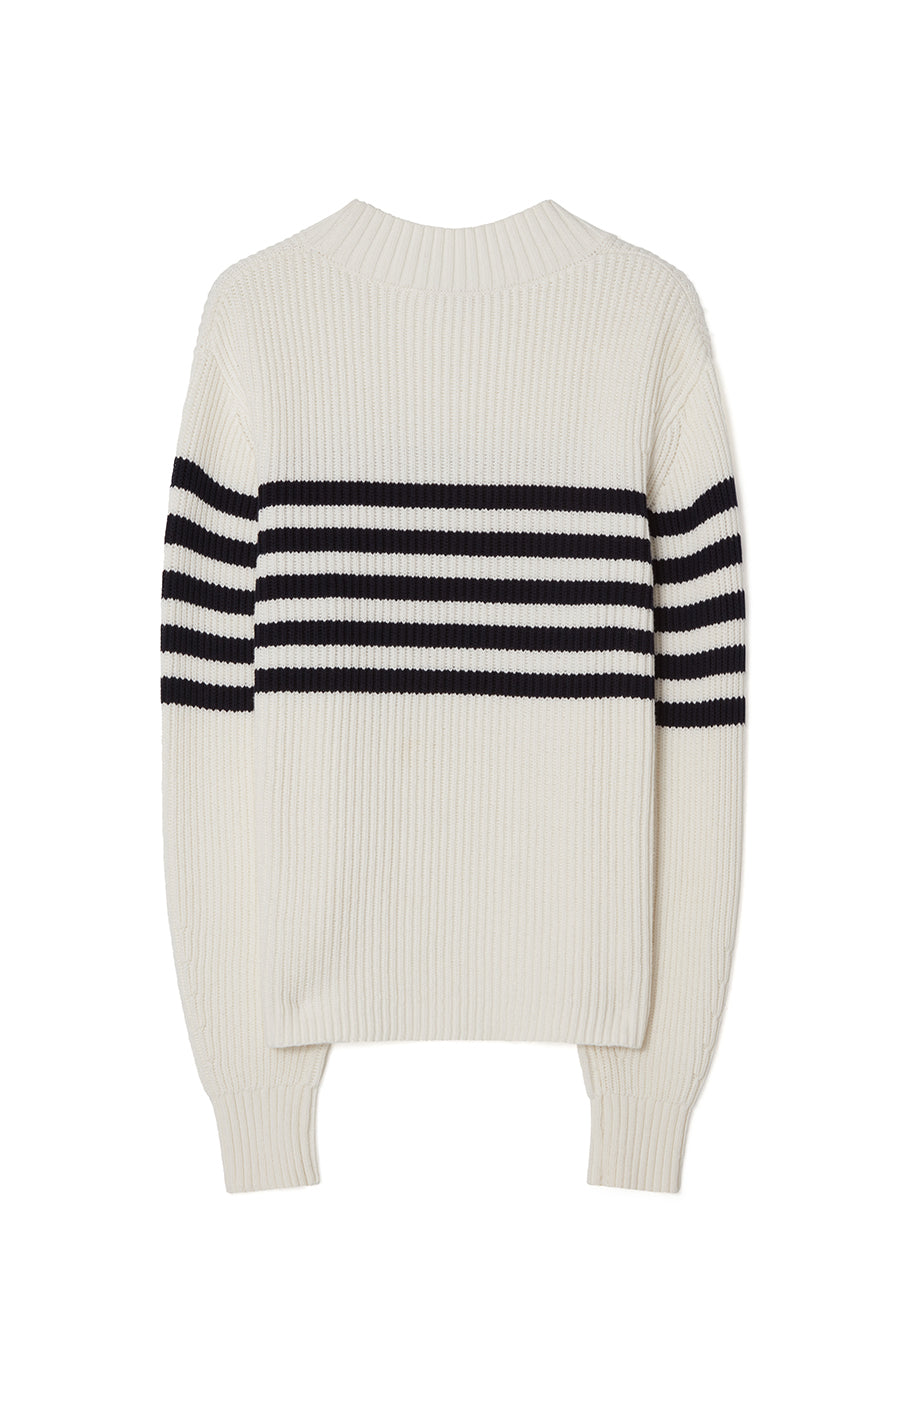 Busnel - Tamara Striped Sweater Ecru/Marine - Busnel.com